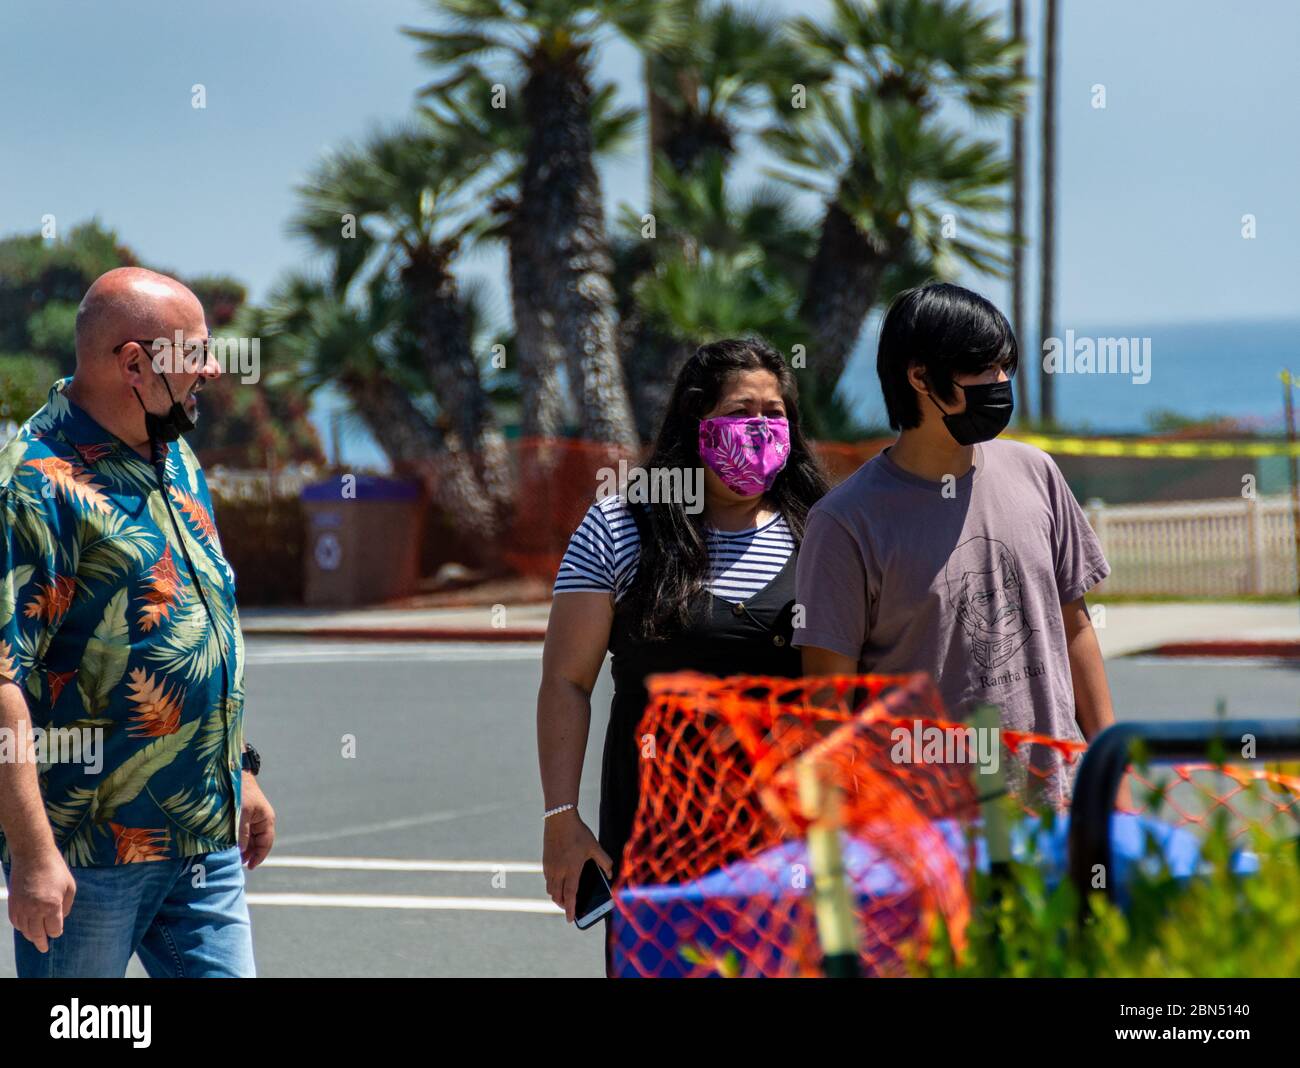 Ein junges Paar, das richtig Schutzmaske trägt, und ein Mann mittleren Alters, der seine Maske falsch unter seinem Kinn trägt, gehen in der Nähe des Ozeans. Stockfoto